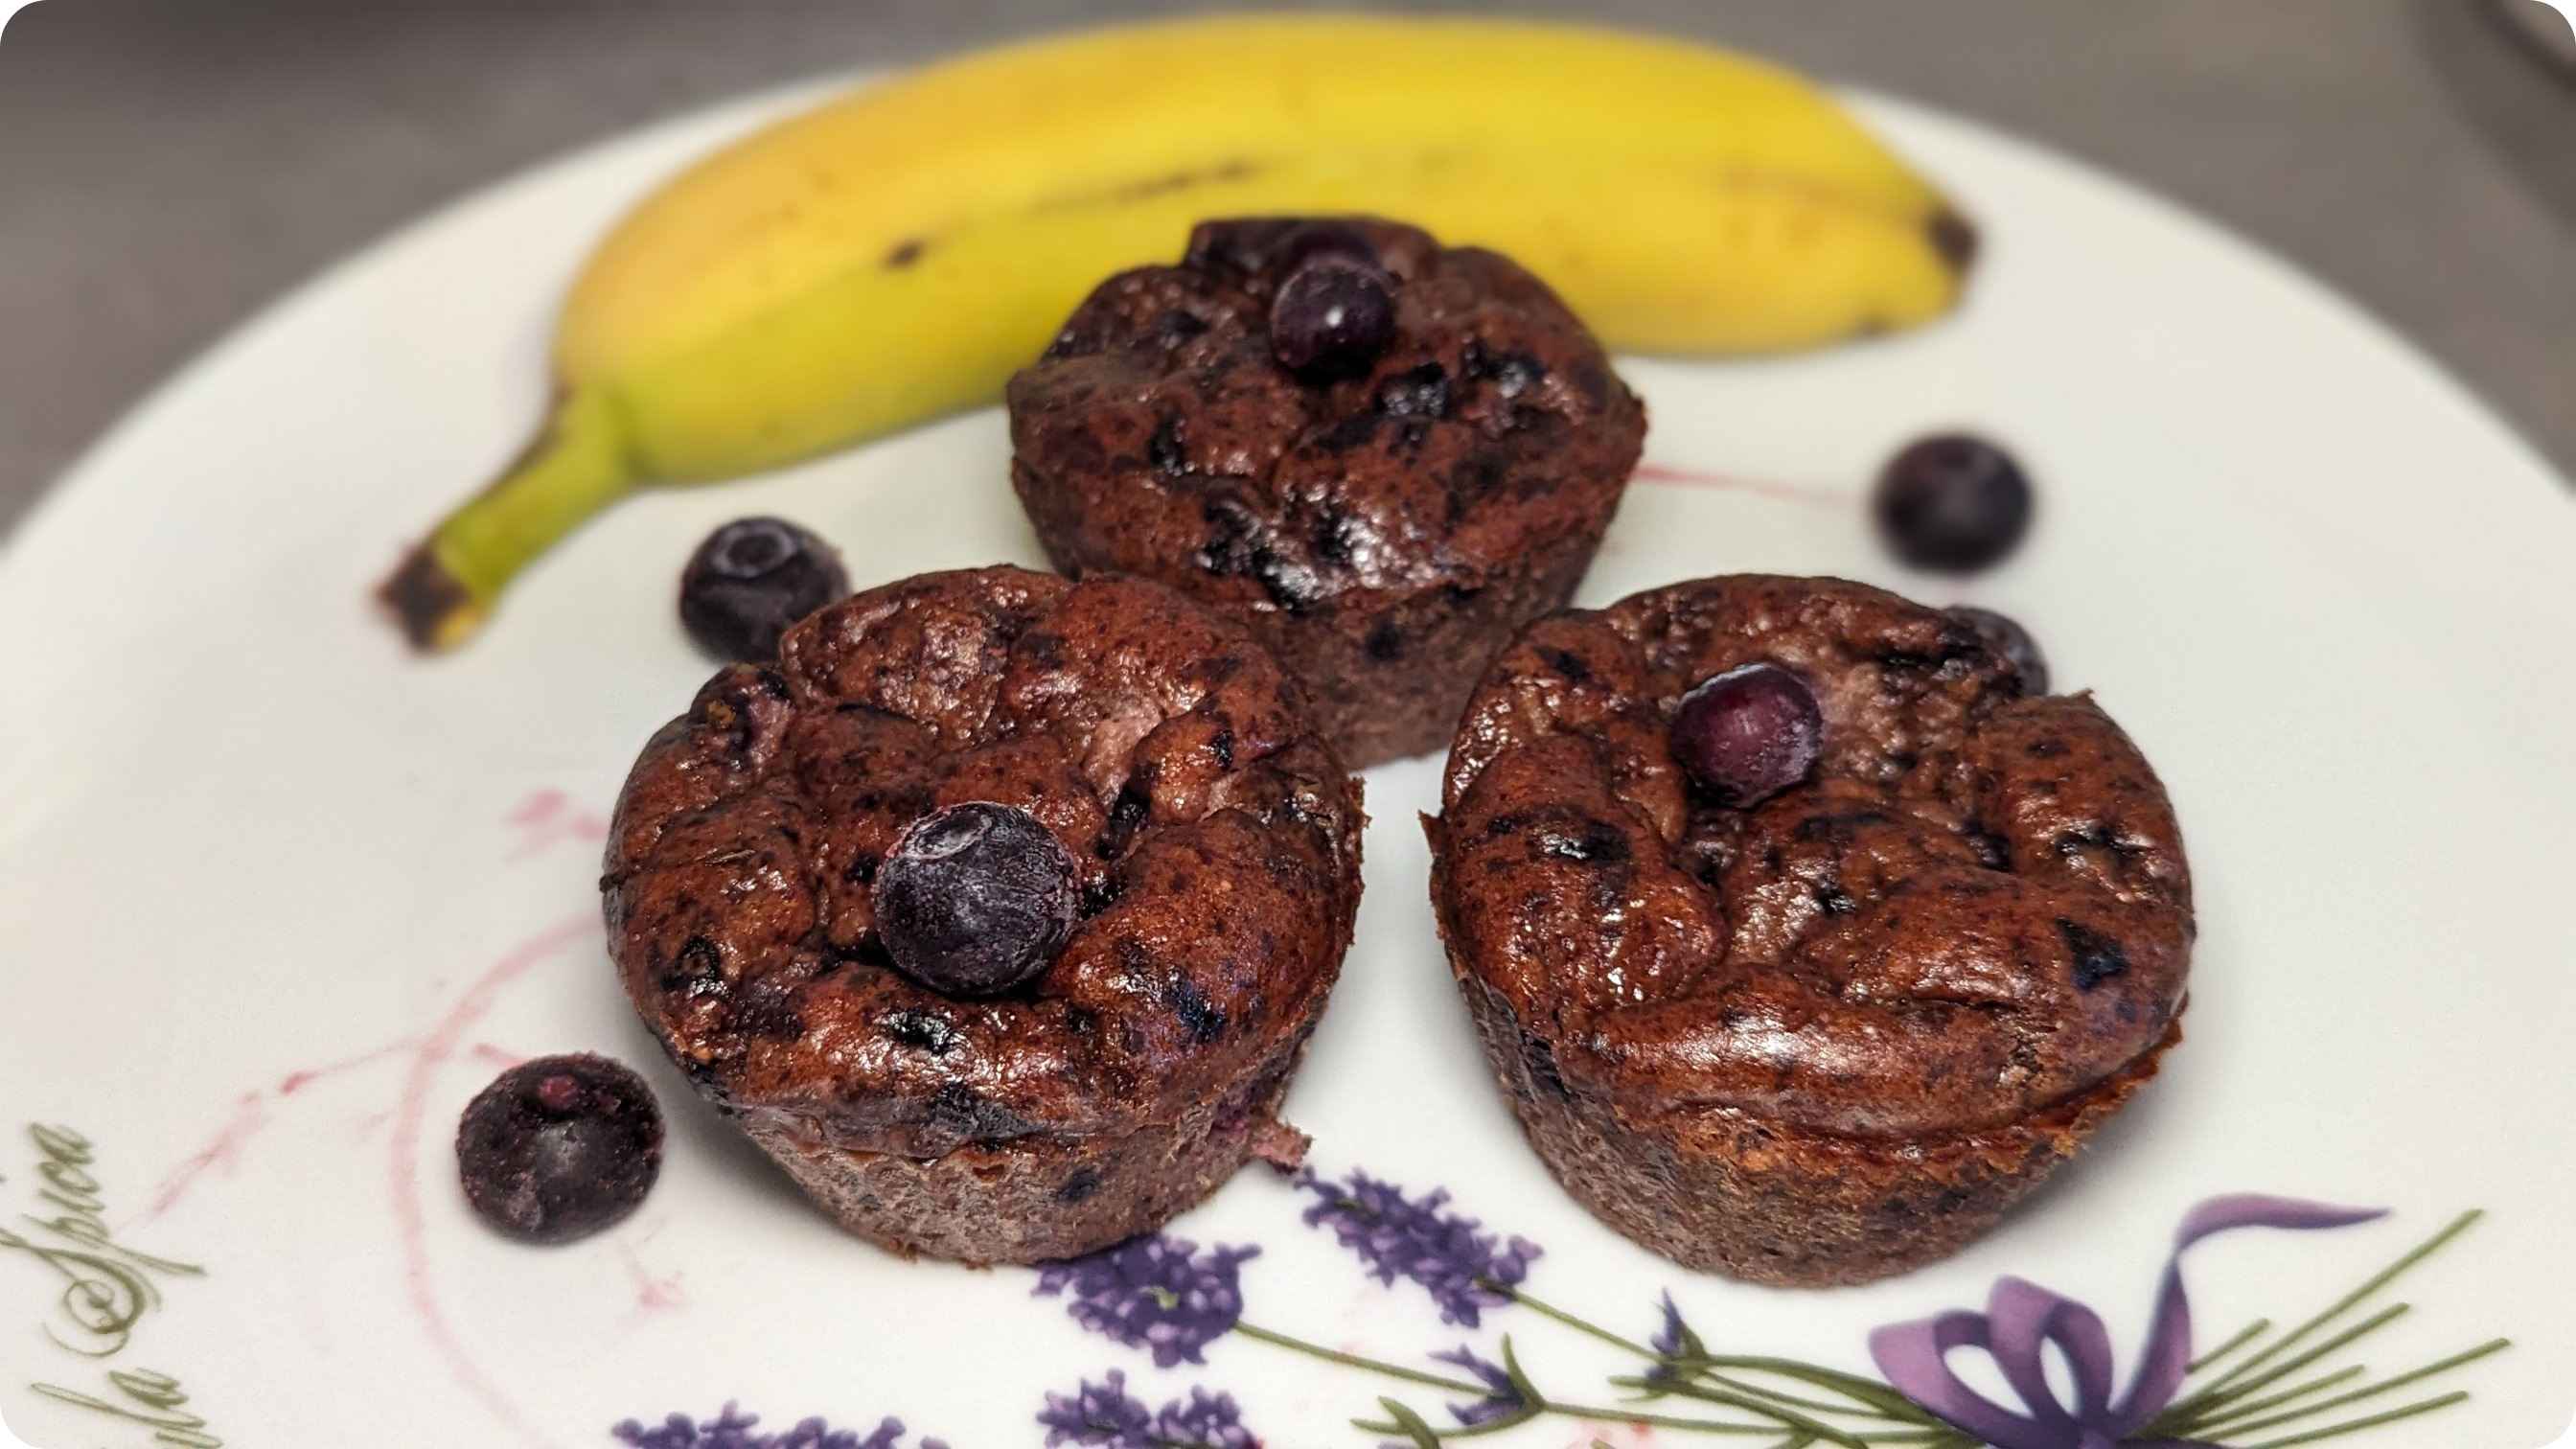 leckere Blaubeer muffins, gesunder kuchen ohne zucker zuckerersatzstoffe, wenige zutaten schnell backen